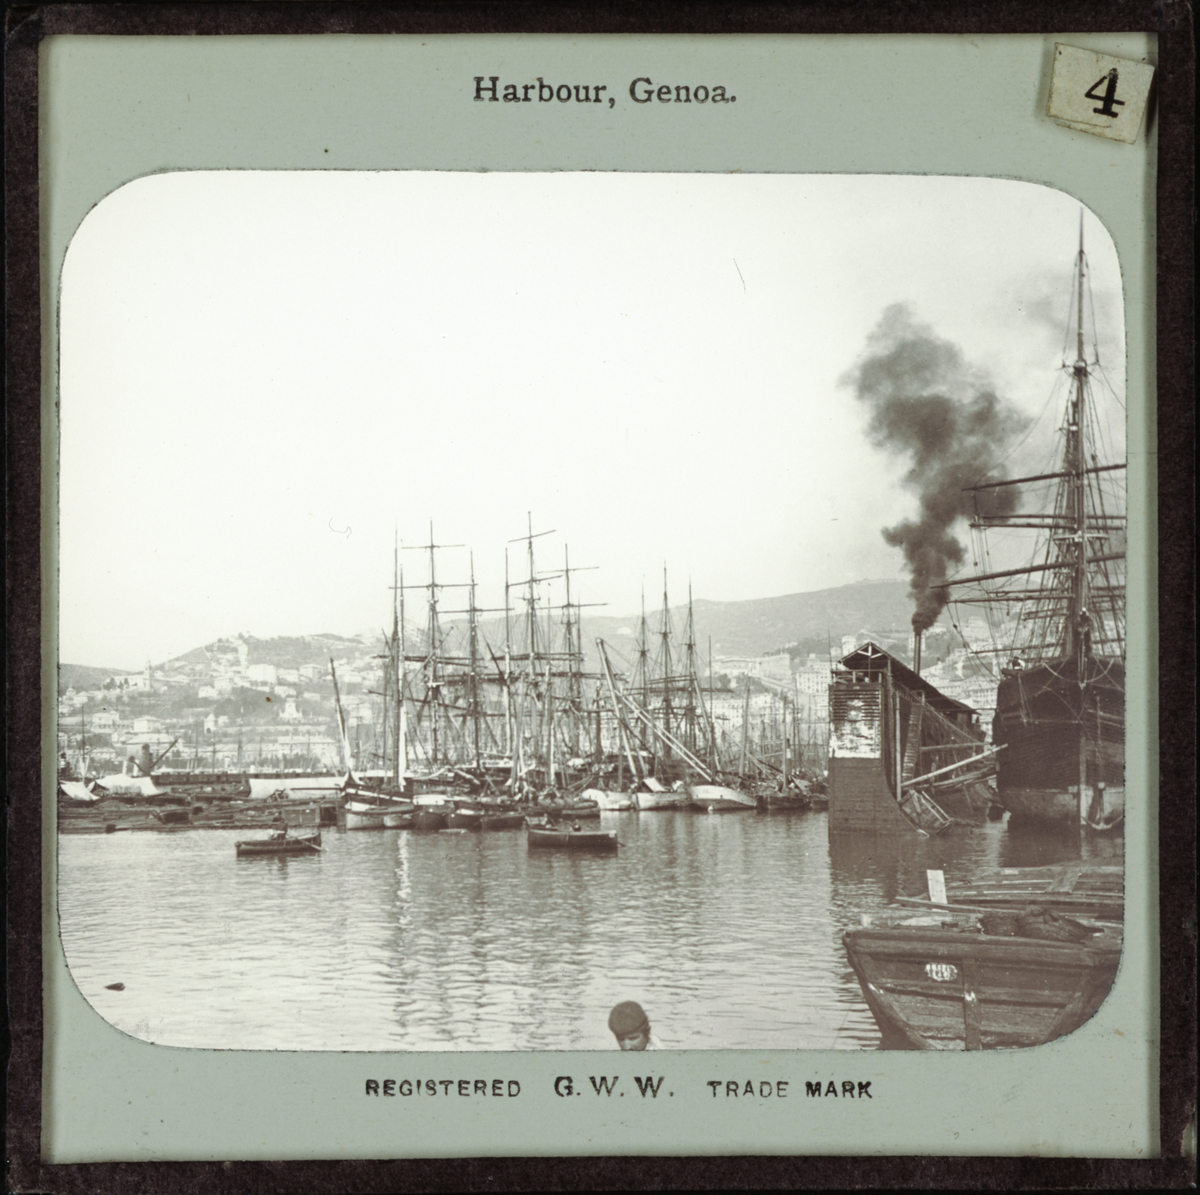 Bild från Italien föreställande hamnen Genua, "Harbour, Genoa". I hamnen finns enbart segelfartyg, men tjock svart rök, kanske från ett ångfartyg, stiger upp bakom en av de utskjutande pirerna. I bilden mitt syns två roddbåtar.
Registered G.W.W. Trade Mark.